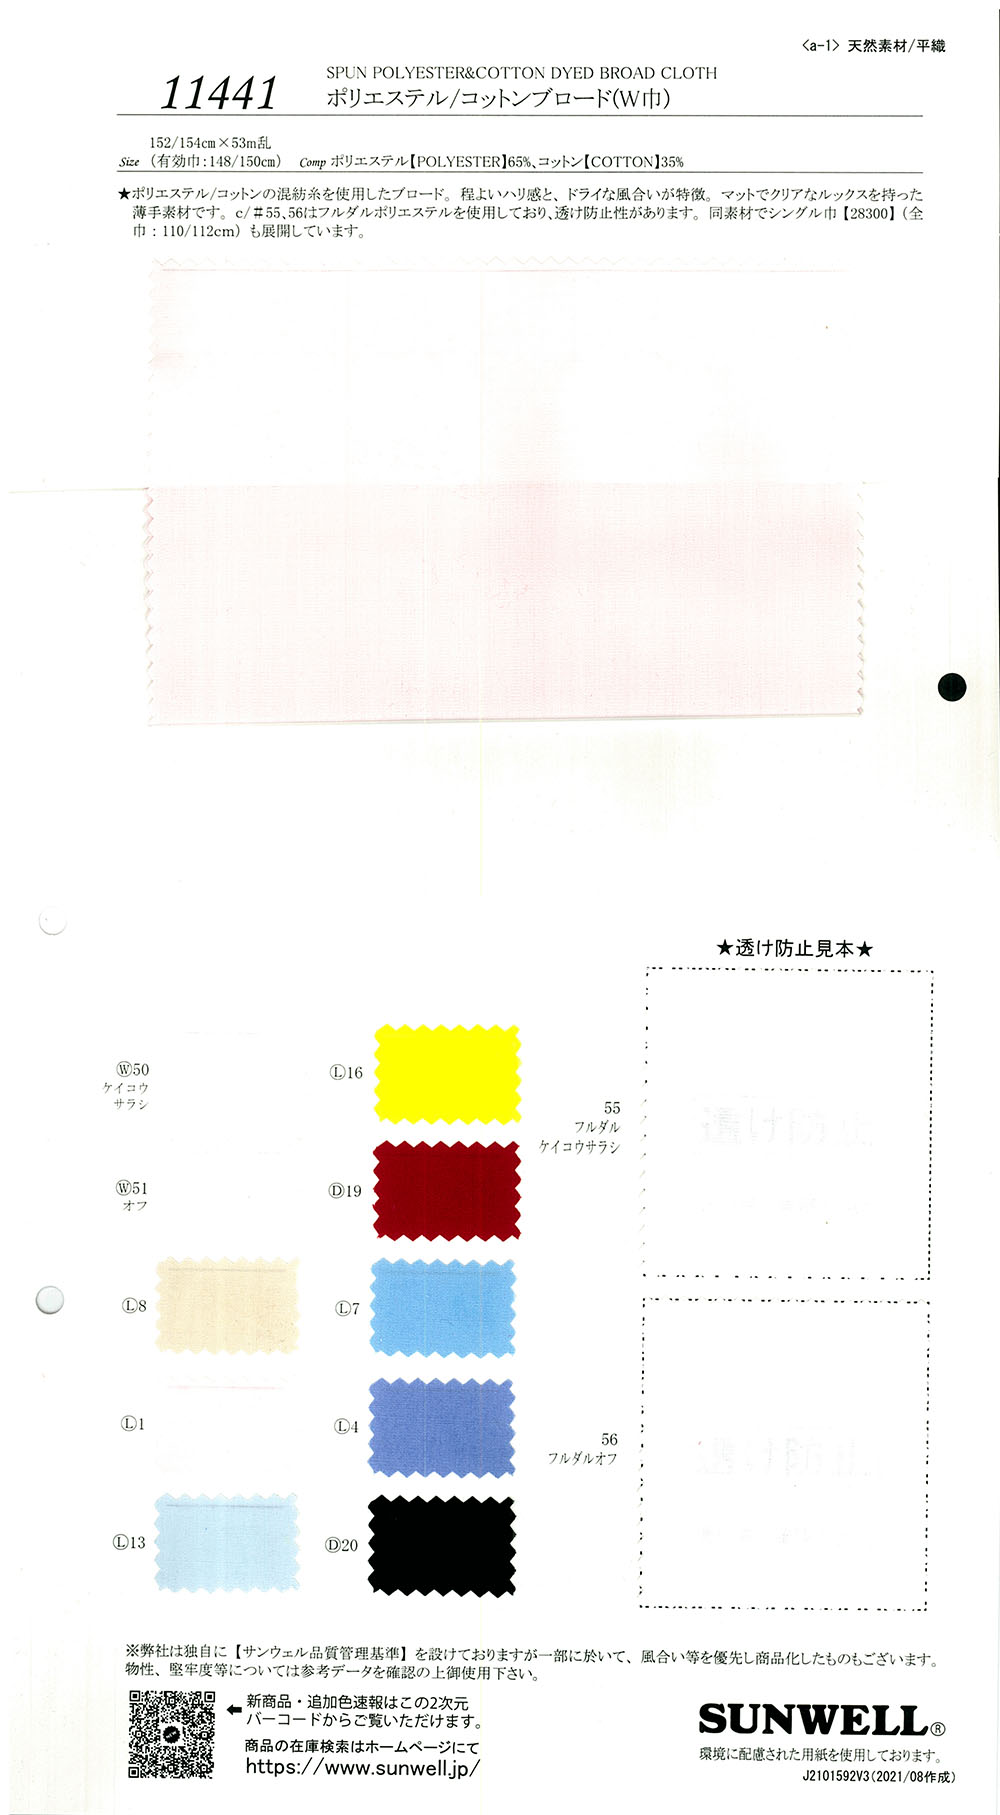 11441 Wollstoff Aus Polyester/Baumwolle (Breite Breite)[Textilgewebe] SUNWELL